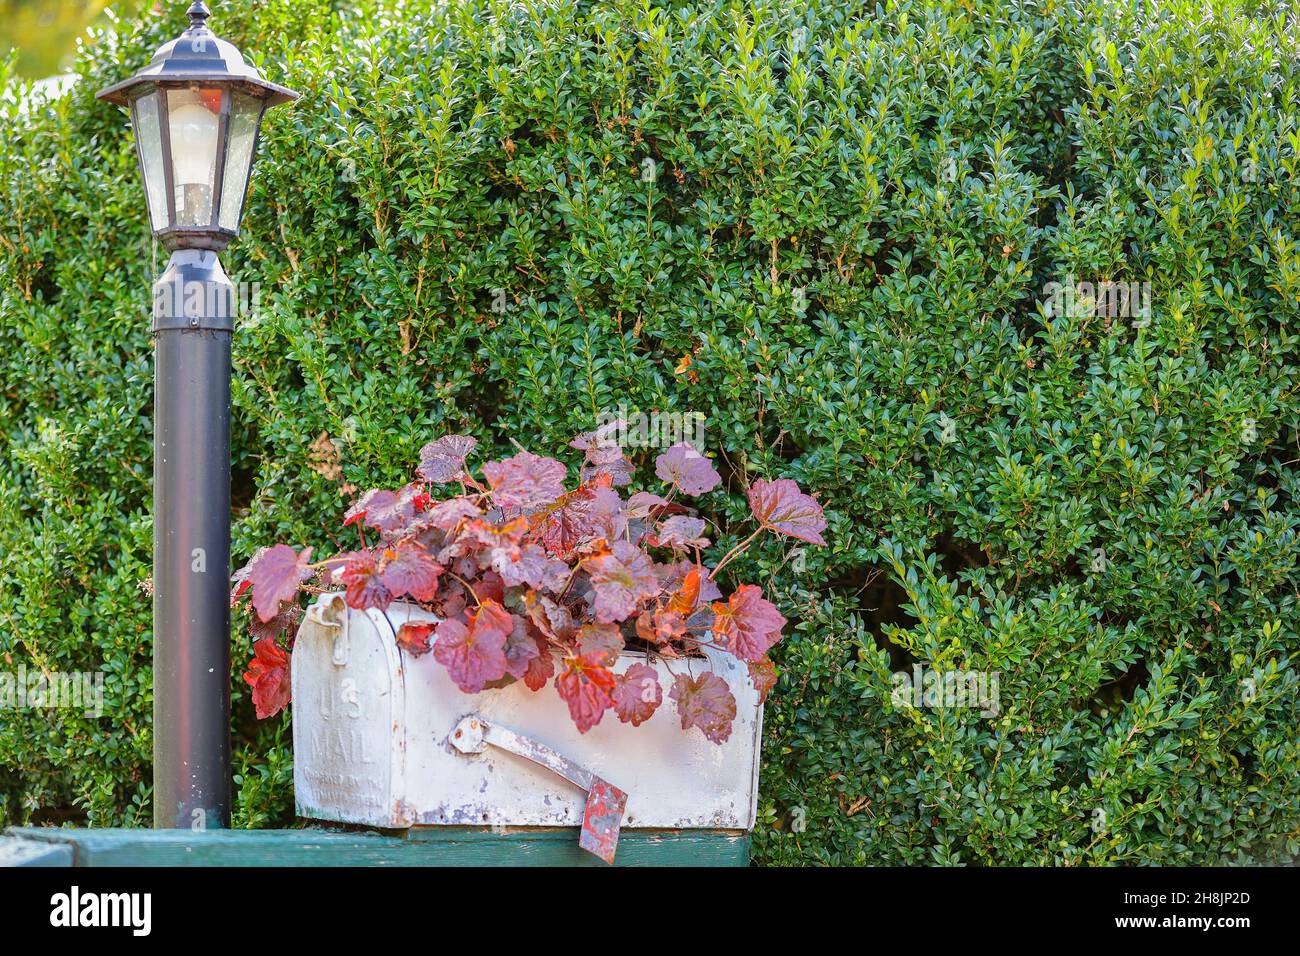 Nahaufnahme eines Briefkastens, der bei einem Blumentopf auf einer Holzschiene neben einem Lichtpfosten im Freien verwendet wird. Stockfoto